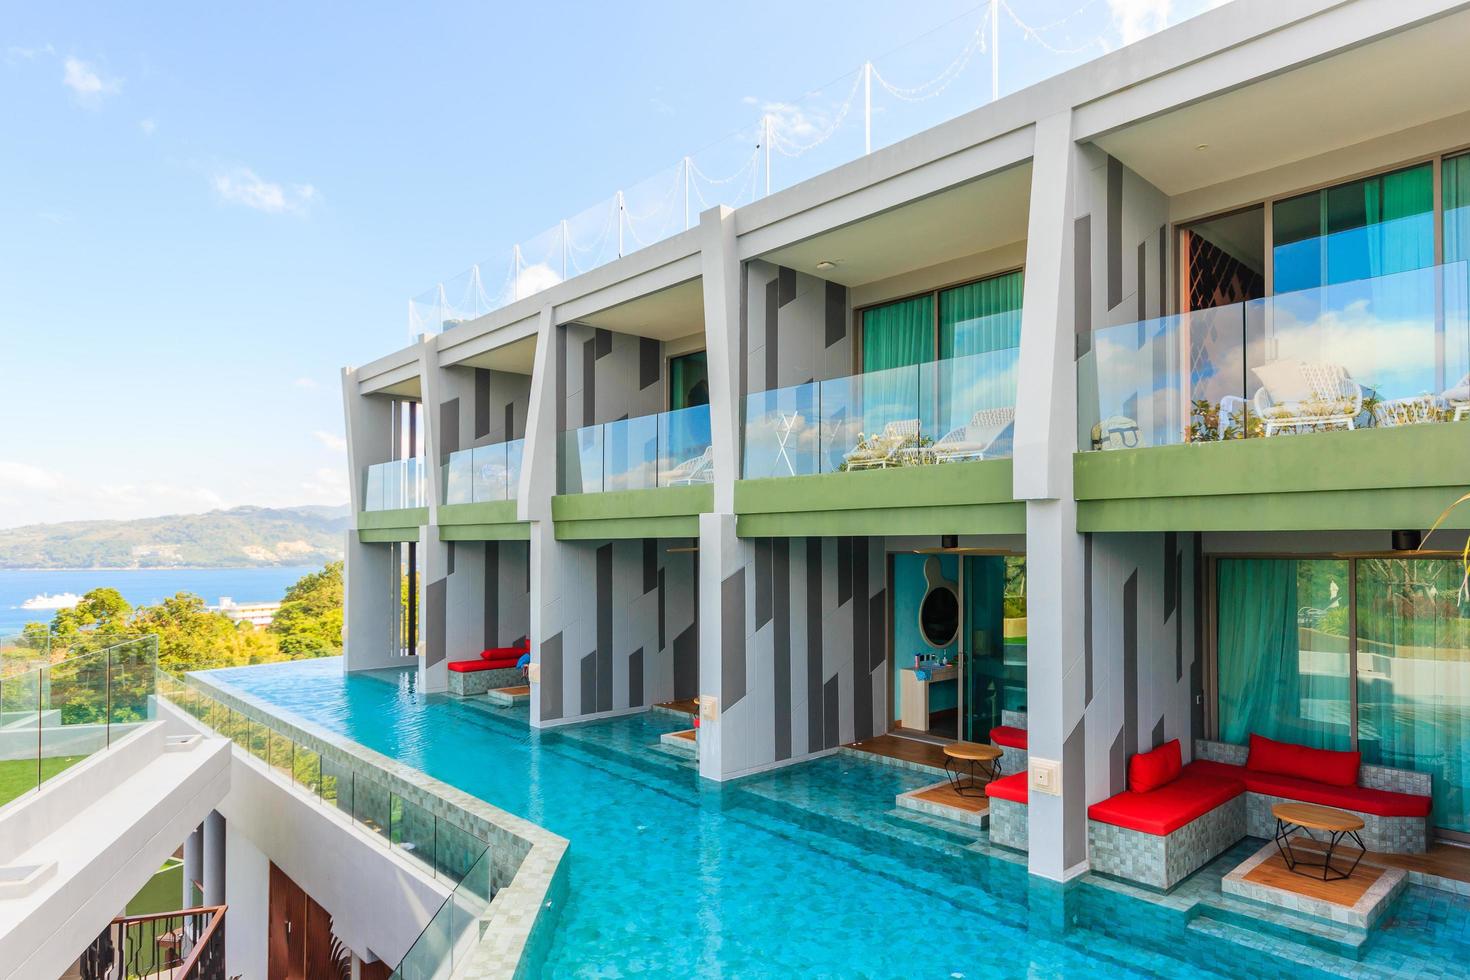 Crest Resort und Pool Villen und Resorts, Phuket Island, Thailand, 2017 foto